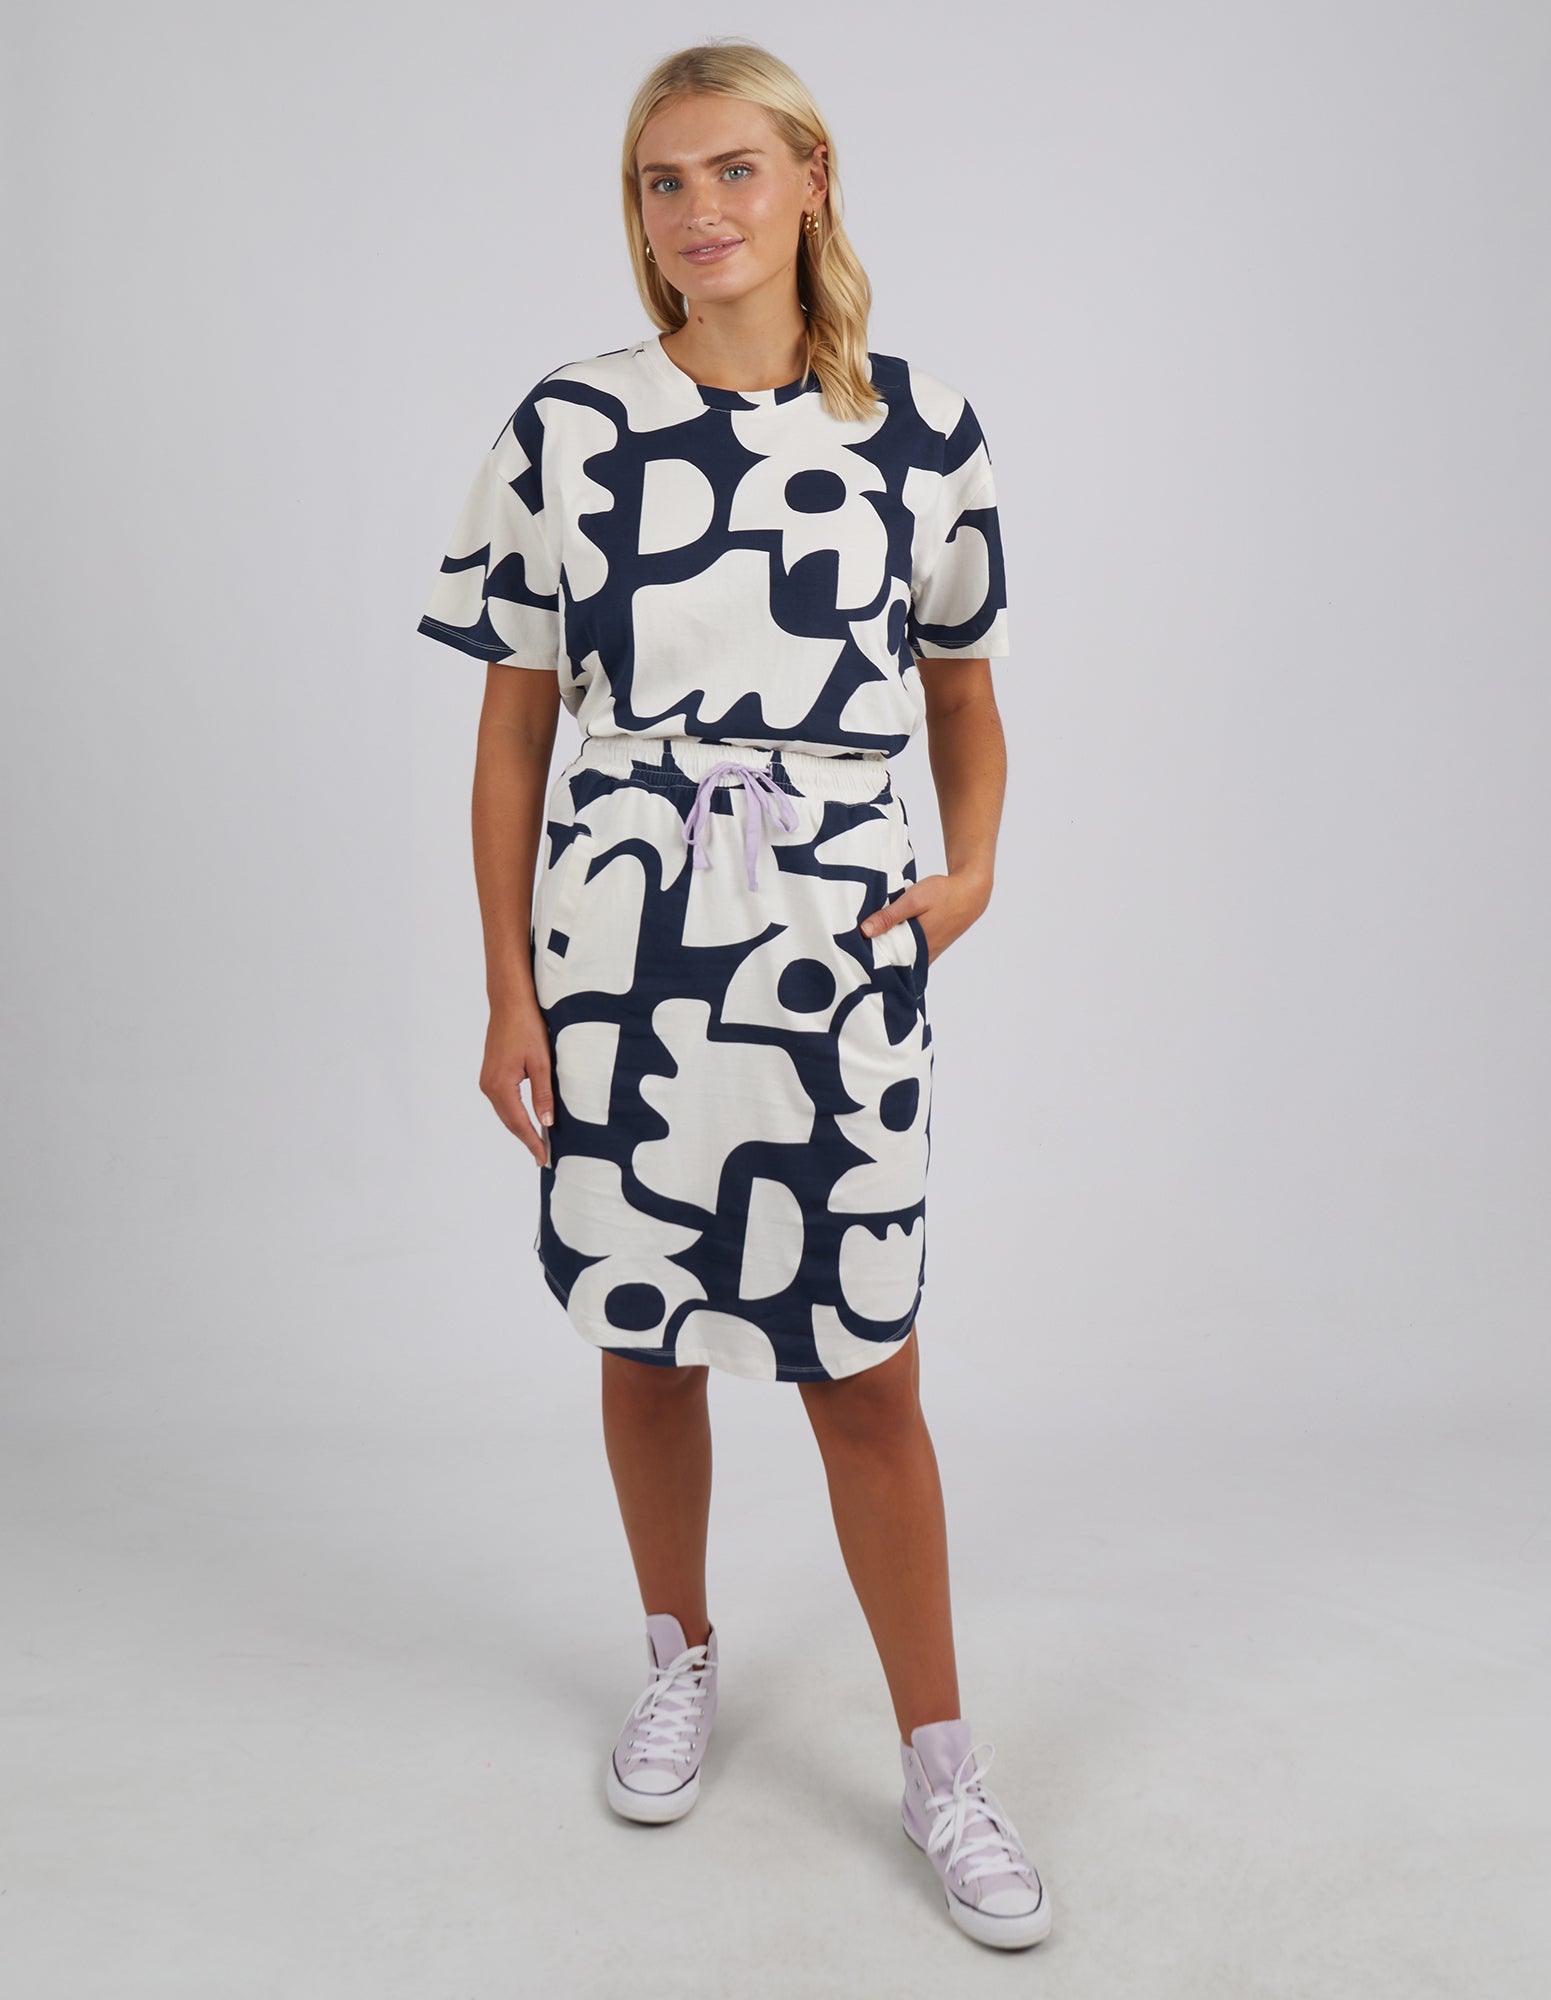 Miro Skirt Navy Geometric Print